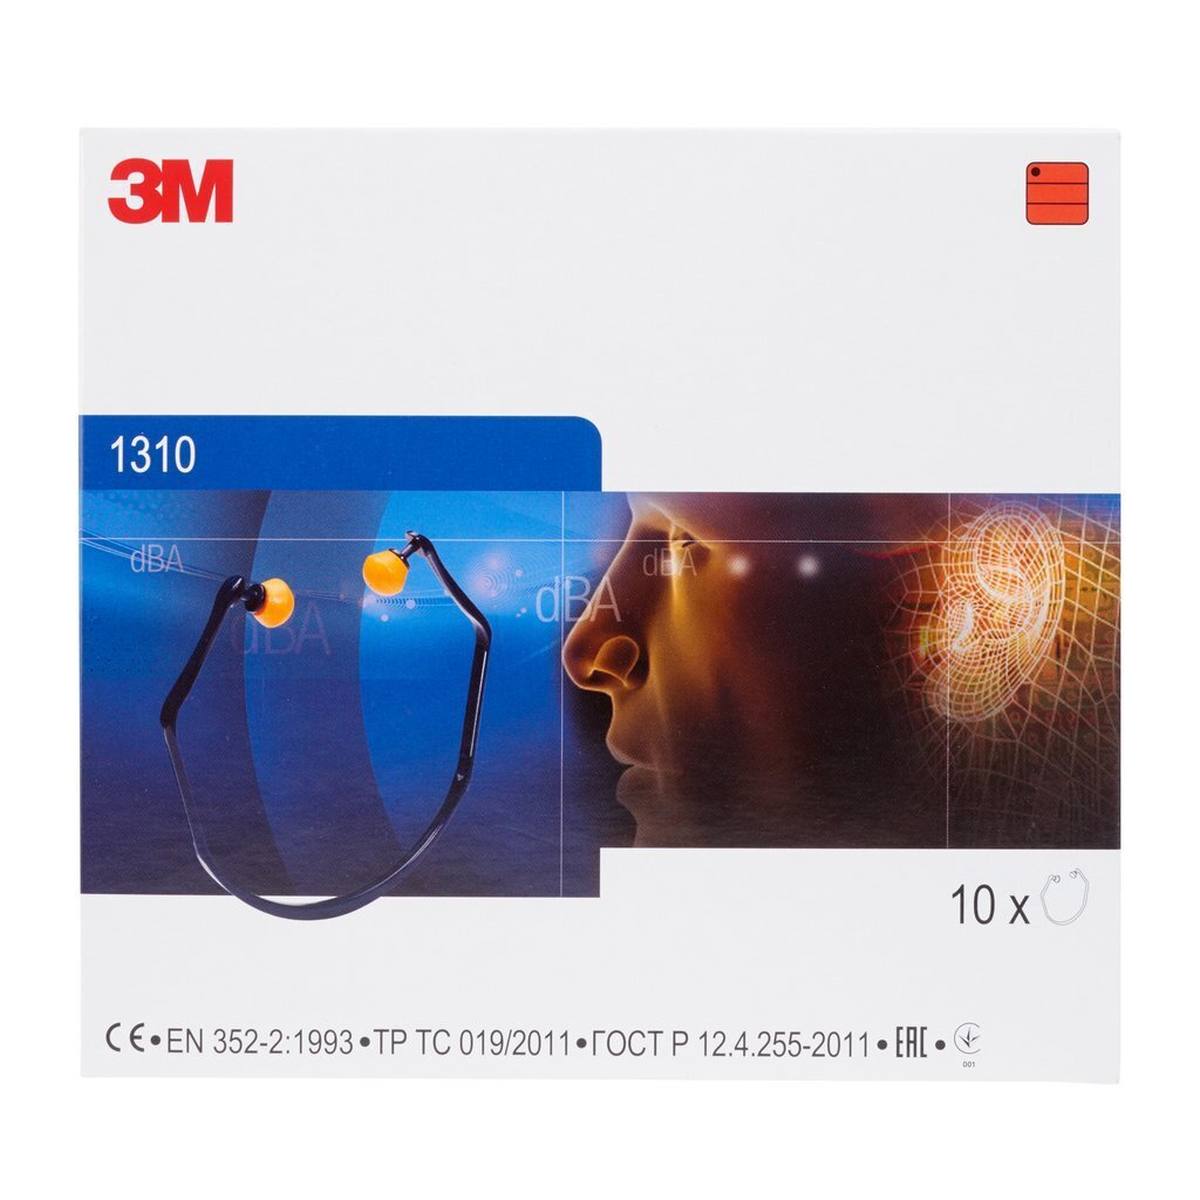 3M 1310 gehoorbescherming, bijzonder comfortabel dankzij elastisch oorstukje, SNR = 26 dB